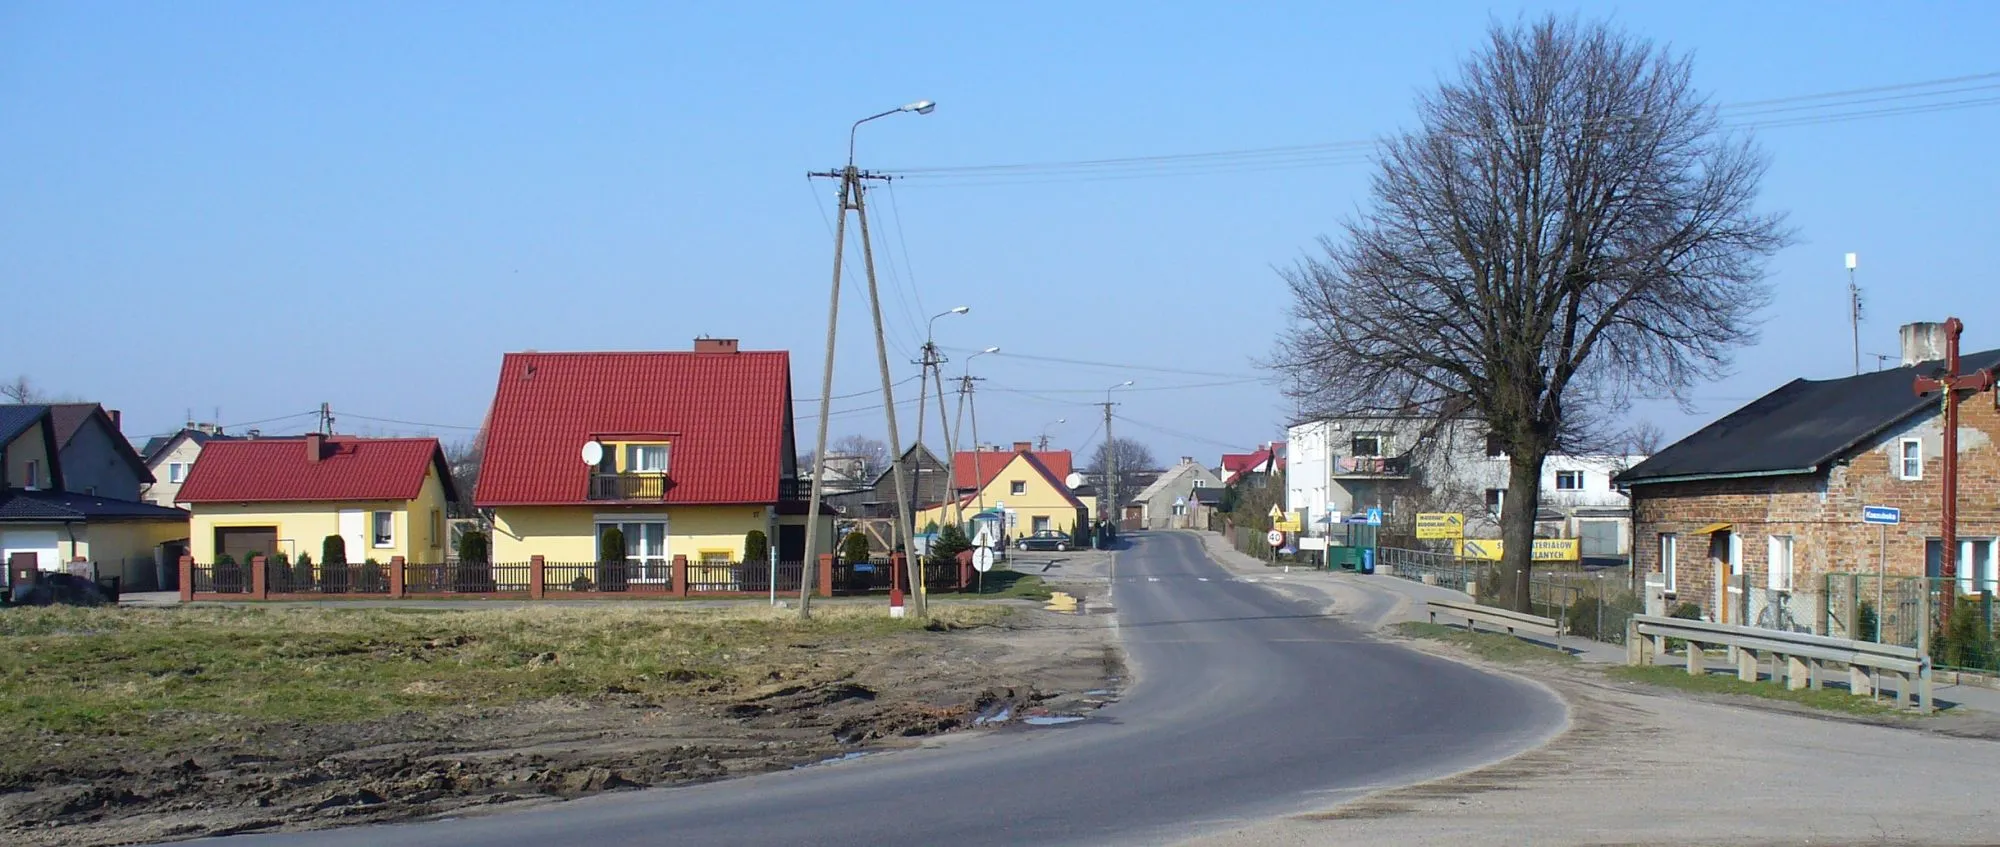 Photo showing: Village Pierwoszyno, Poland.